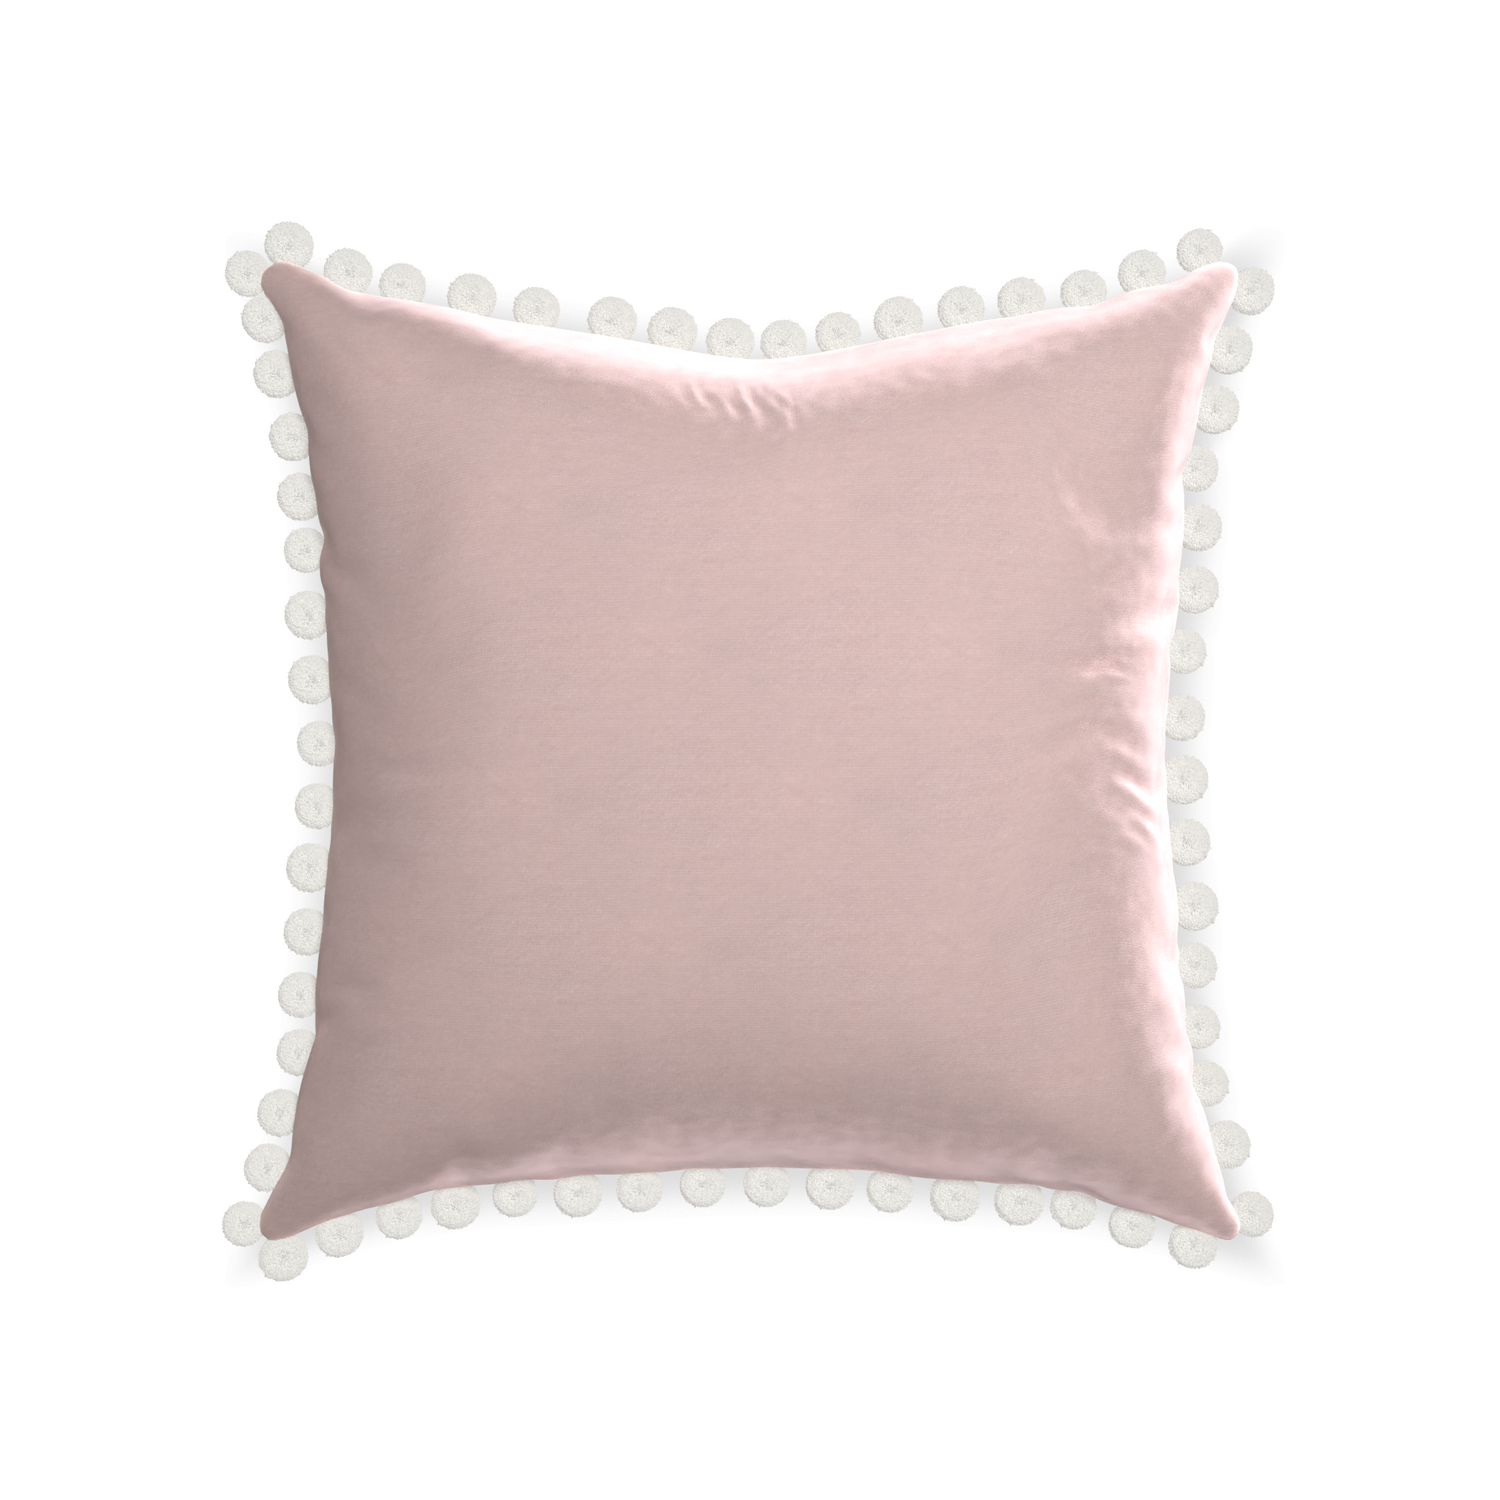 22-square rose velvet custom pillow with snow pom pom on white background